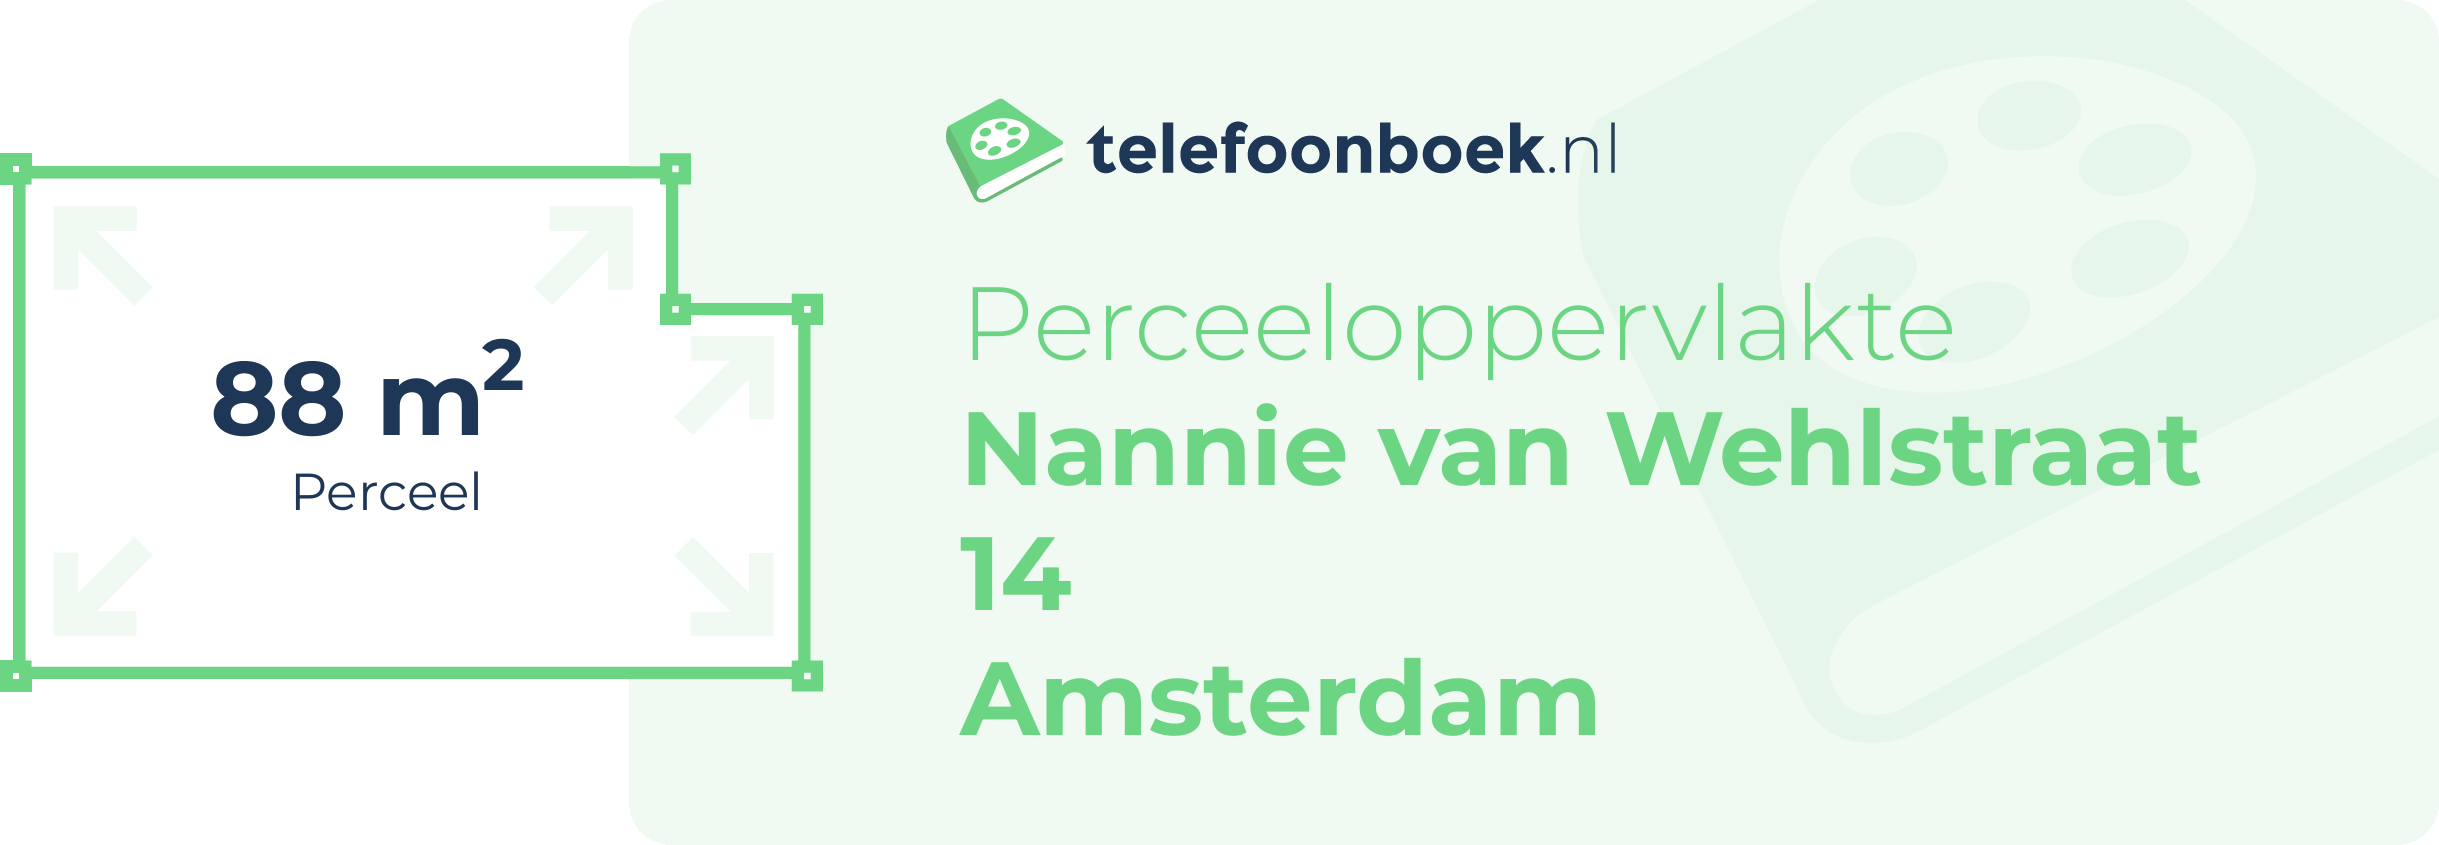 Perceeloppervlakte Nannie Van Wehlstraat 14 Amsterdam